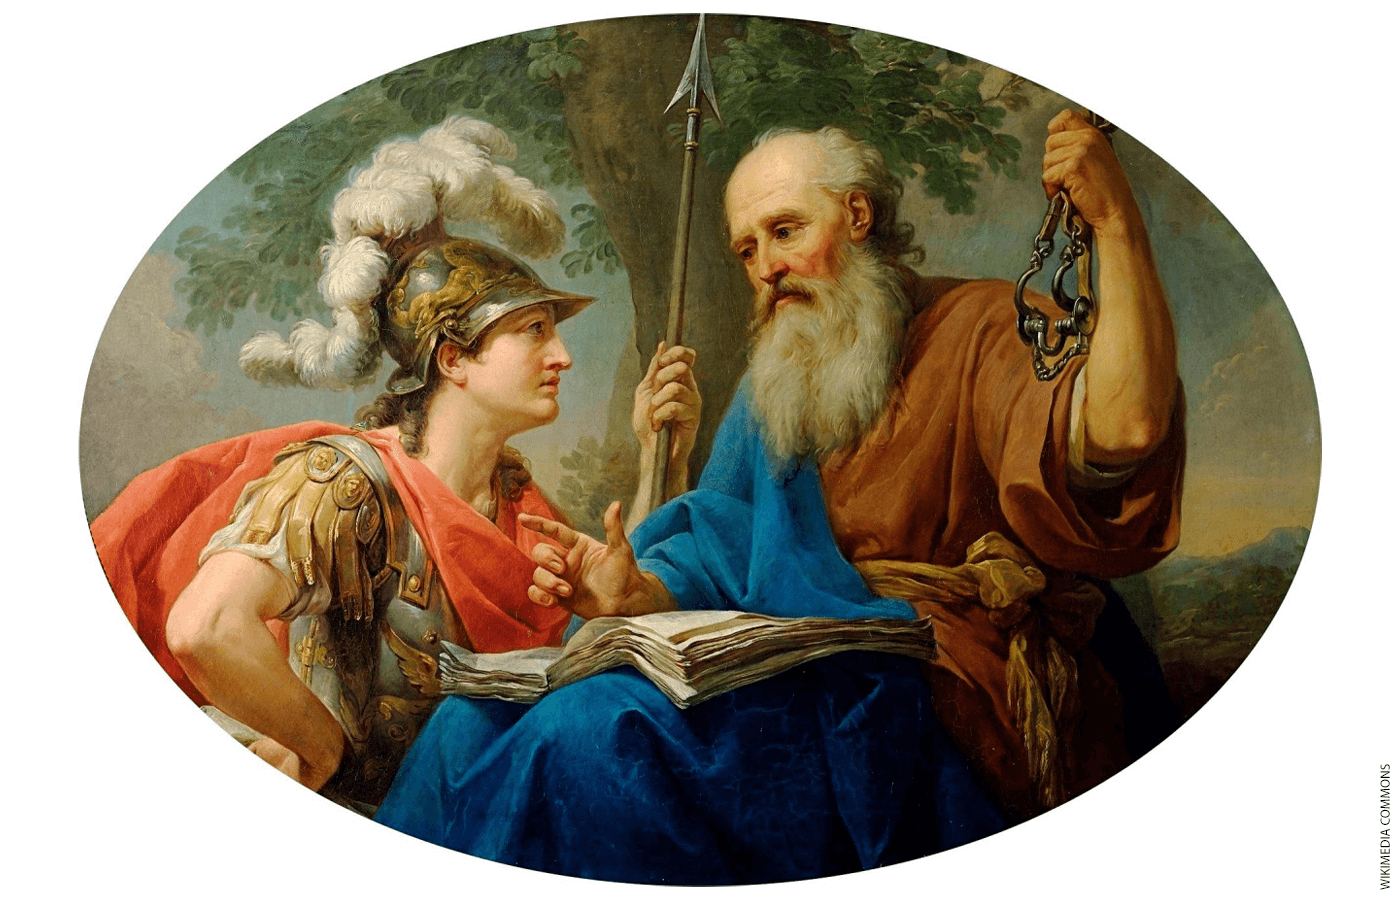 Marcello Bacciarelli's "Alcibiades Being Taught by Socrates"